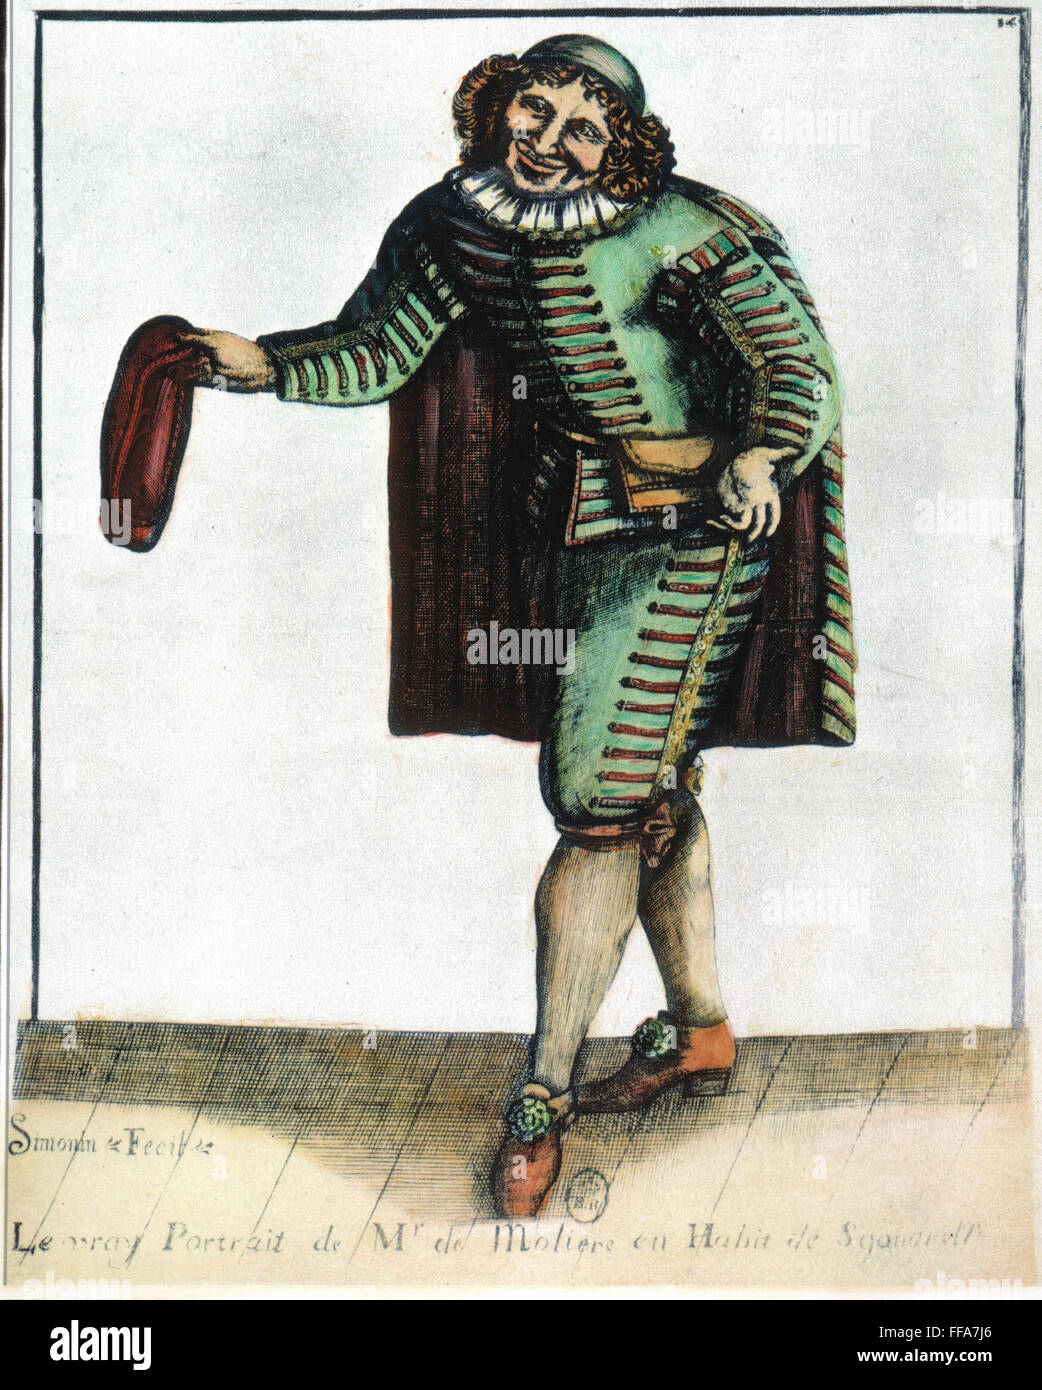 MOLIERE (1622-1673). /nPseudonym von Jean Baptiste Poquelin. Französischer Schauspieler und Dramatiker. Moliere in der Rolle des "Sganarelle." Zeitgenössische französische Gravur. Stockfoto